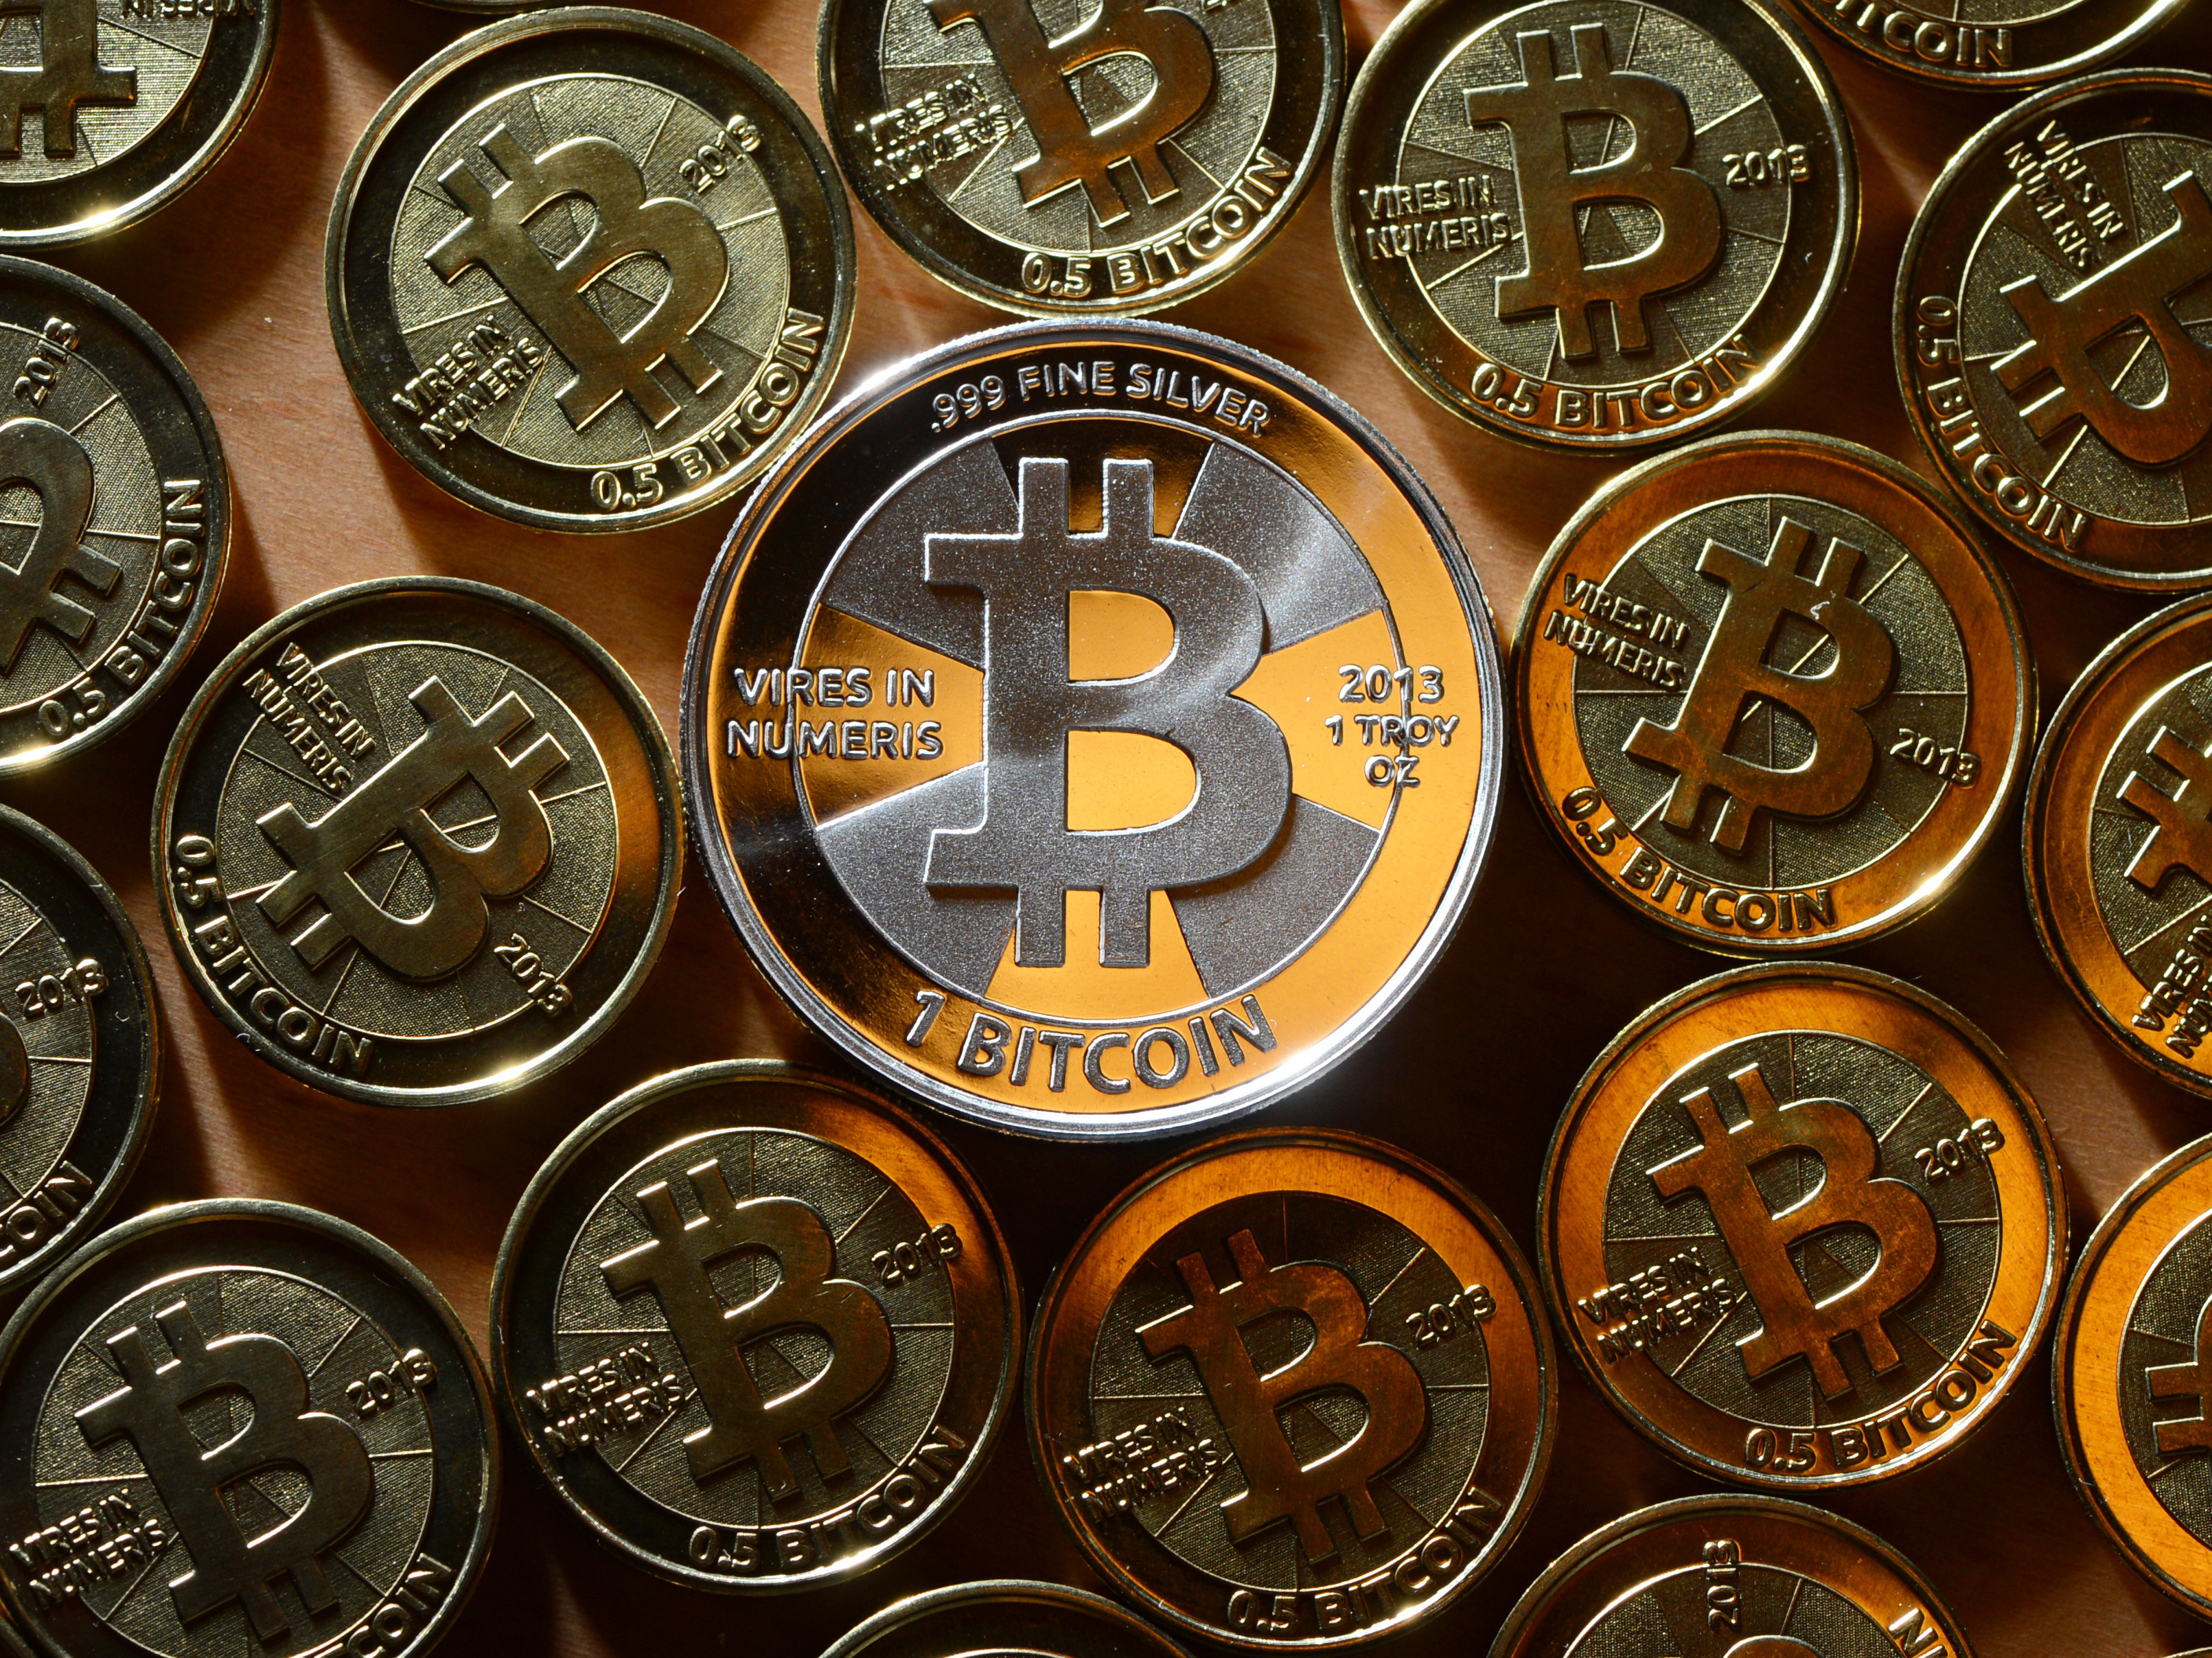 Kriptovaluták zuhanórepülésben: a hétvégén újabb 20%-ot esett a Bitcoin ára - Igényesfédimenzionalishangolas.hu